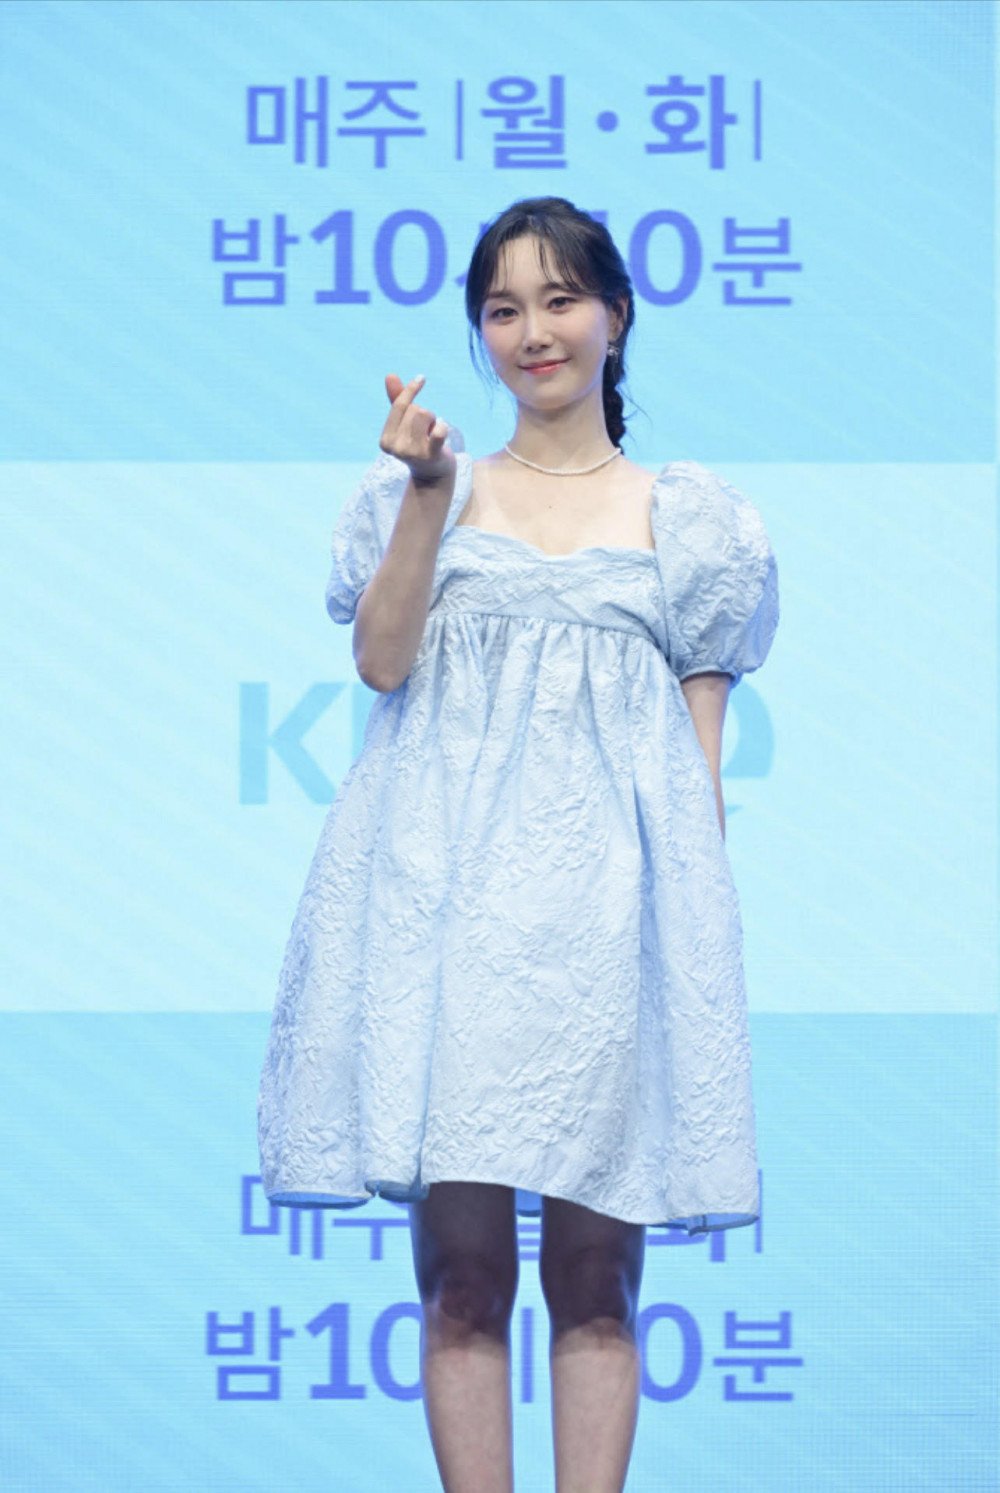 Актриса Ли Ю Ён объявила о браке и беременности после финала дорамы «Относись ко мне небрежно»